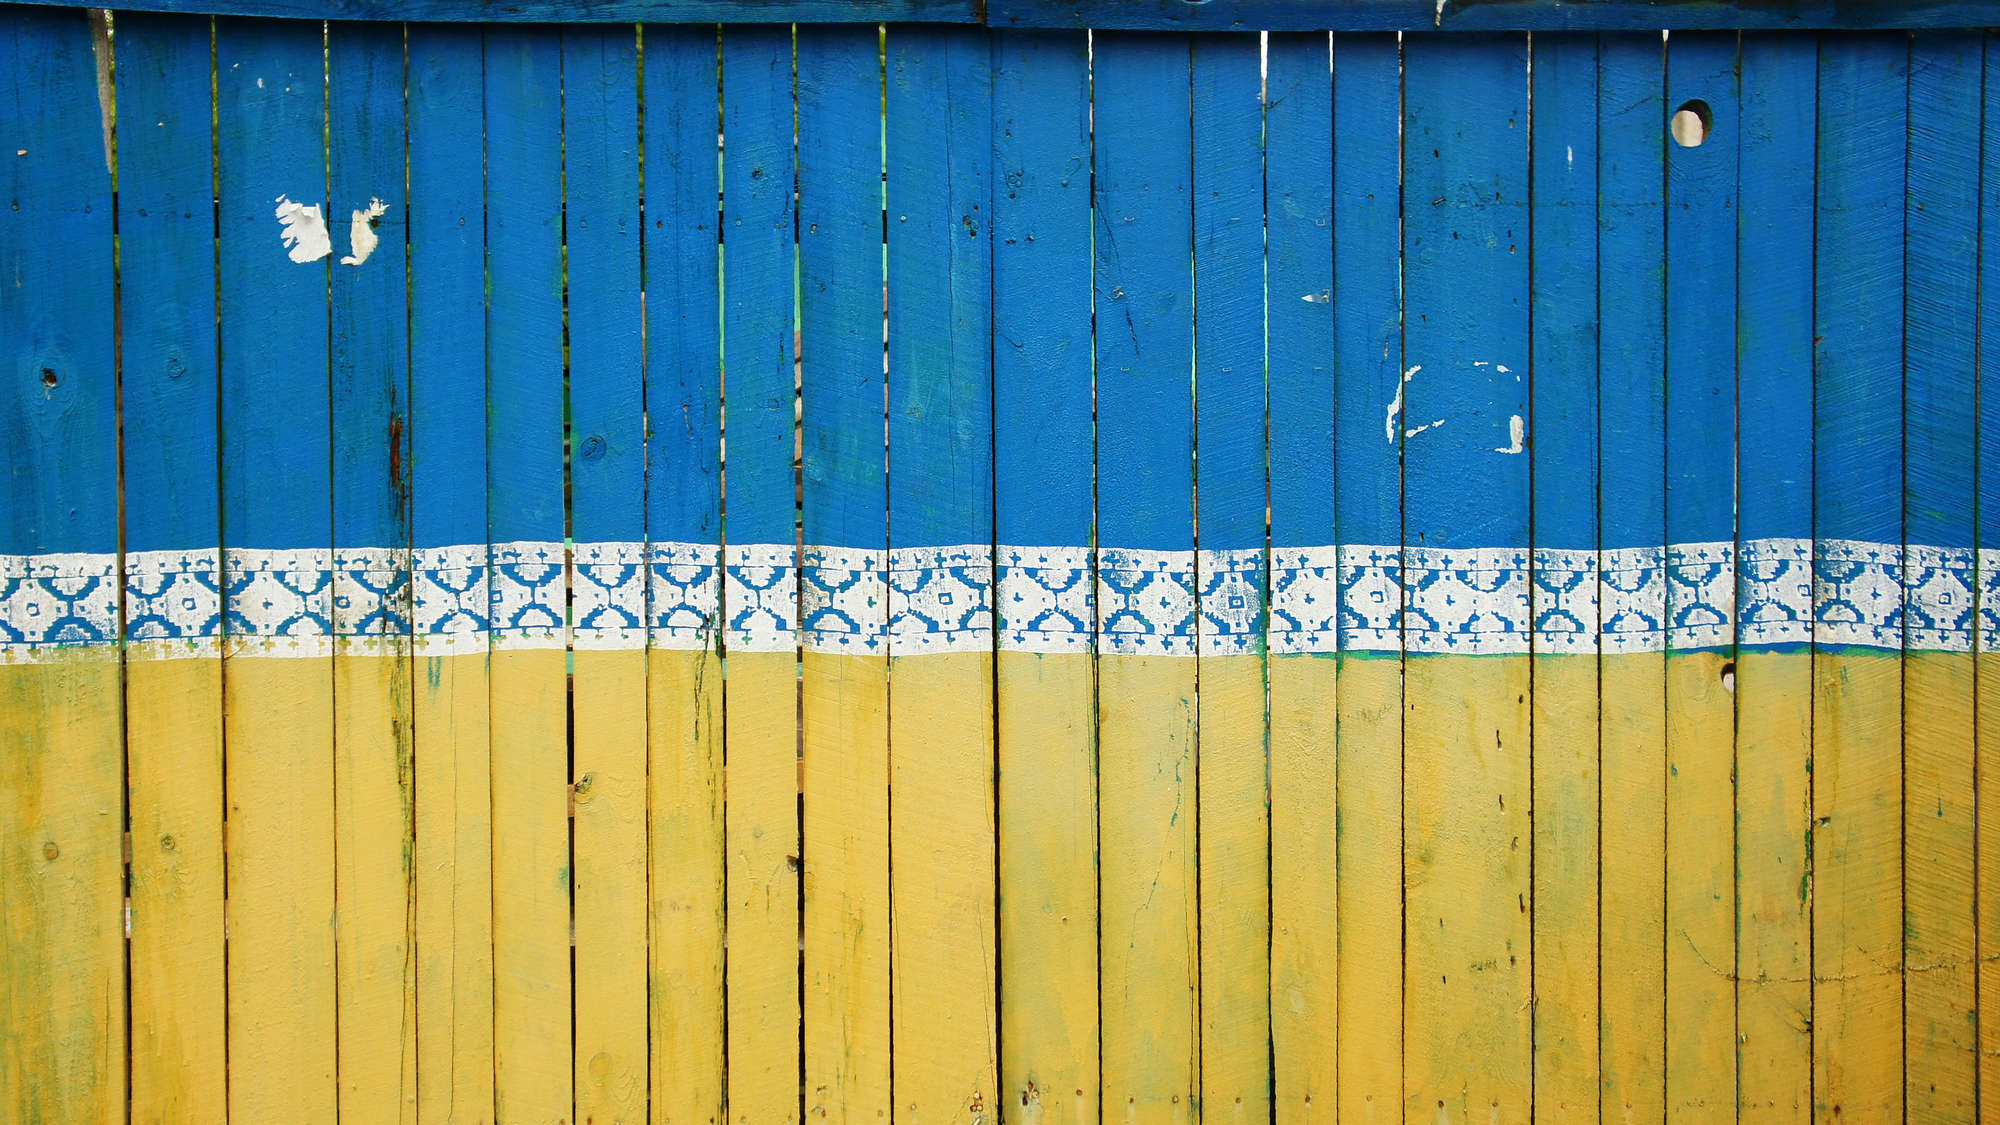 Holzwand in den Farben der Flagge der Ukraine